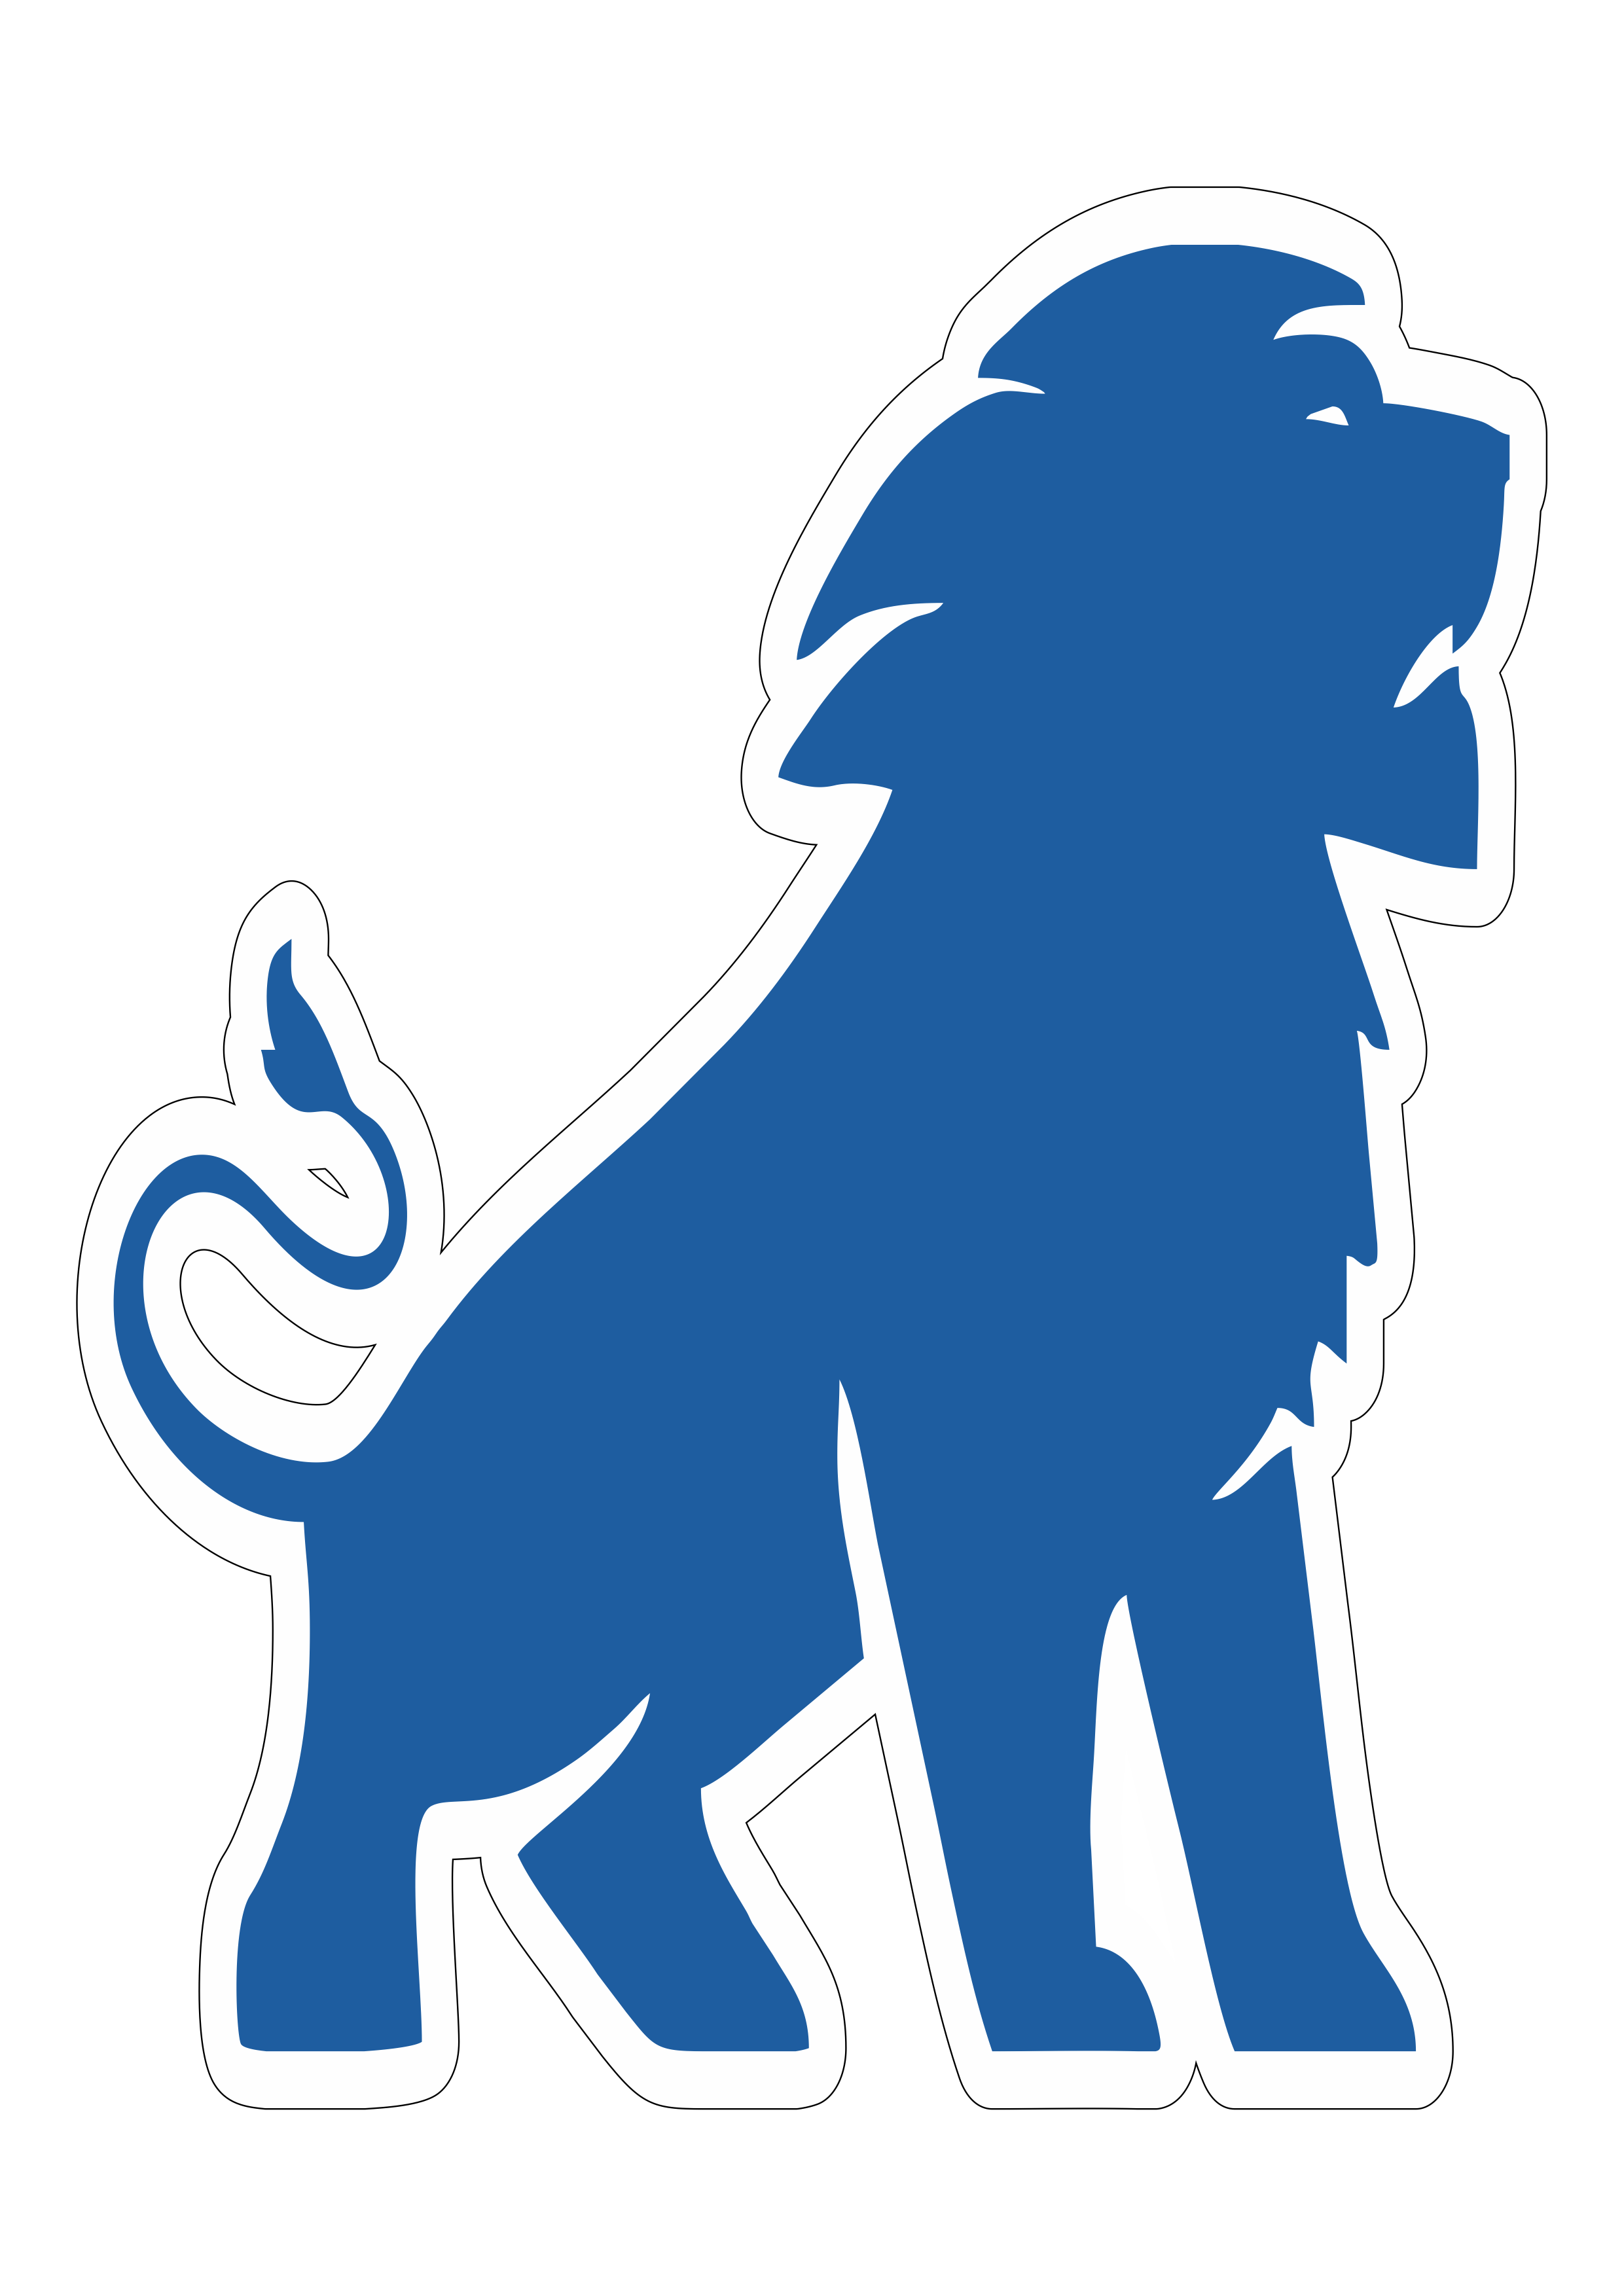 Fortaleza futebol clube símbolo mascote torcida leão azul fundo transparente png